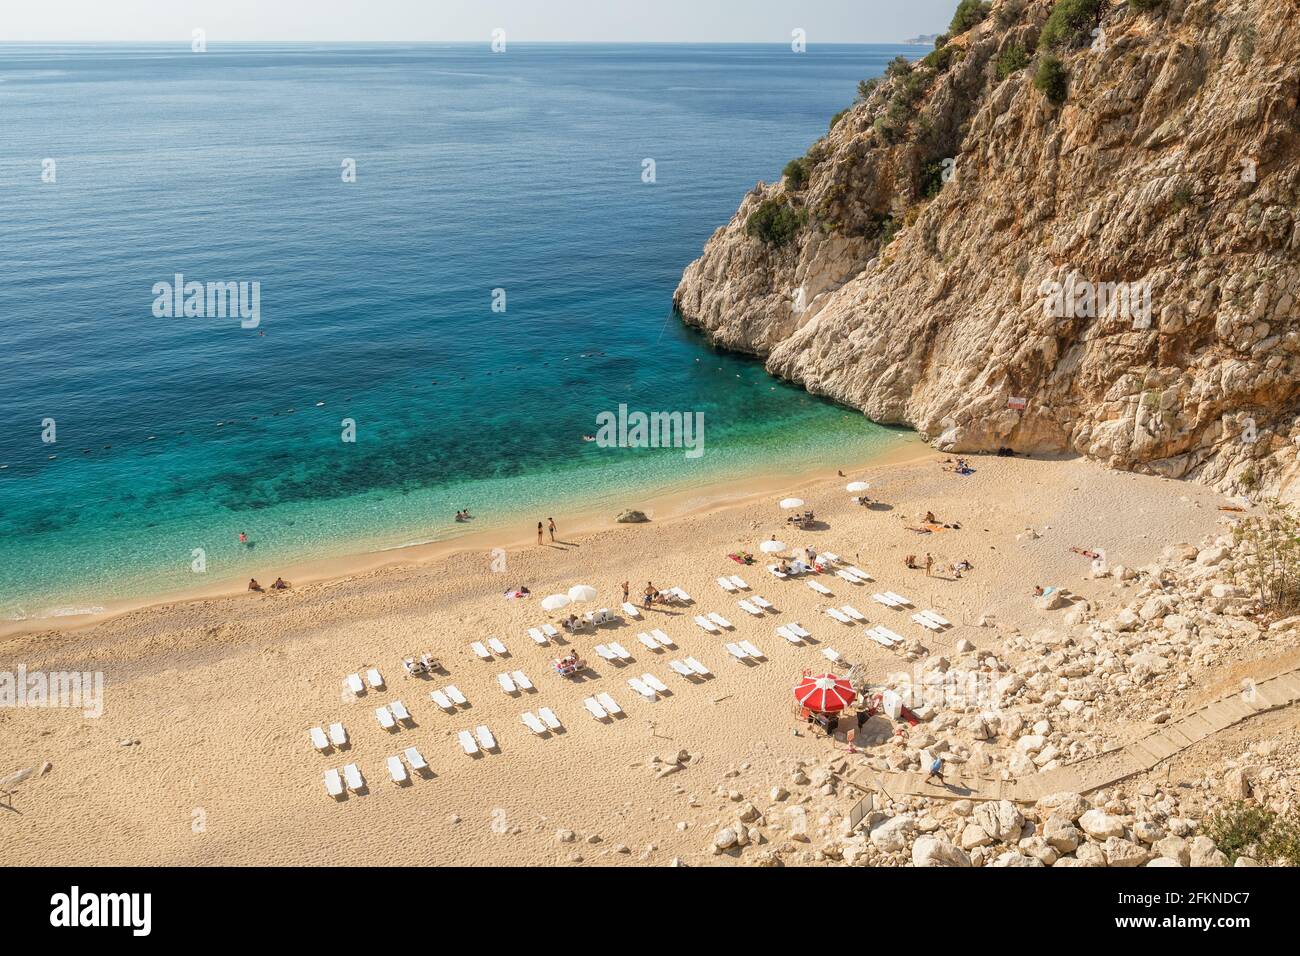 Bella spiaggia di Kaputash sul Mar Mediterraneo in Turchia Foto Stock